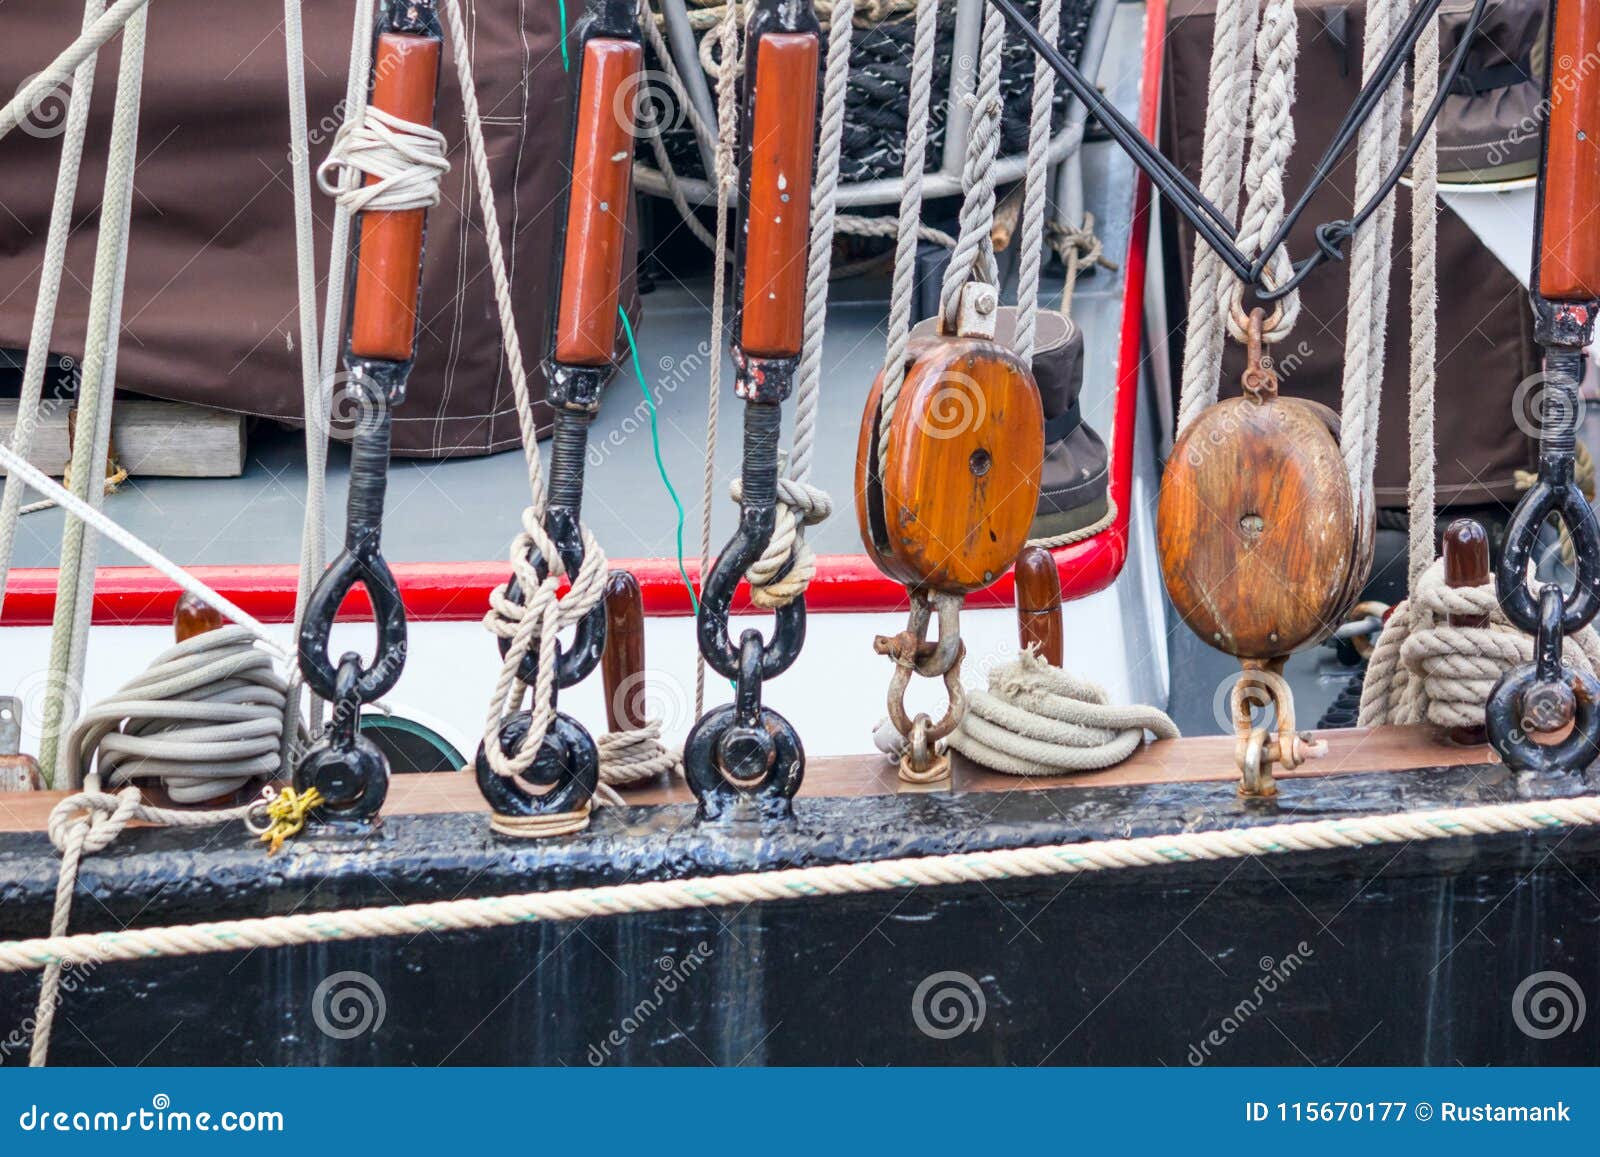 sailboat rigging tools